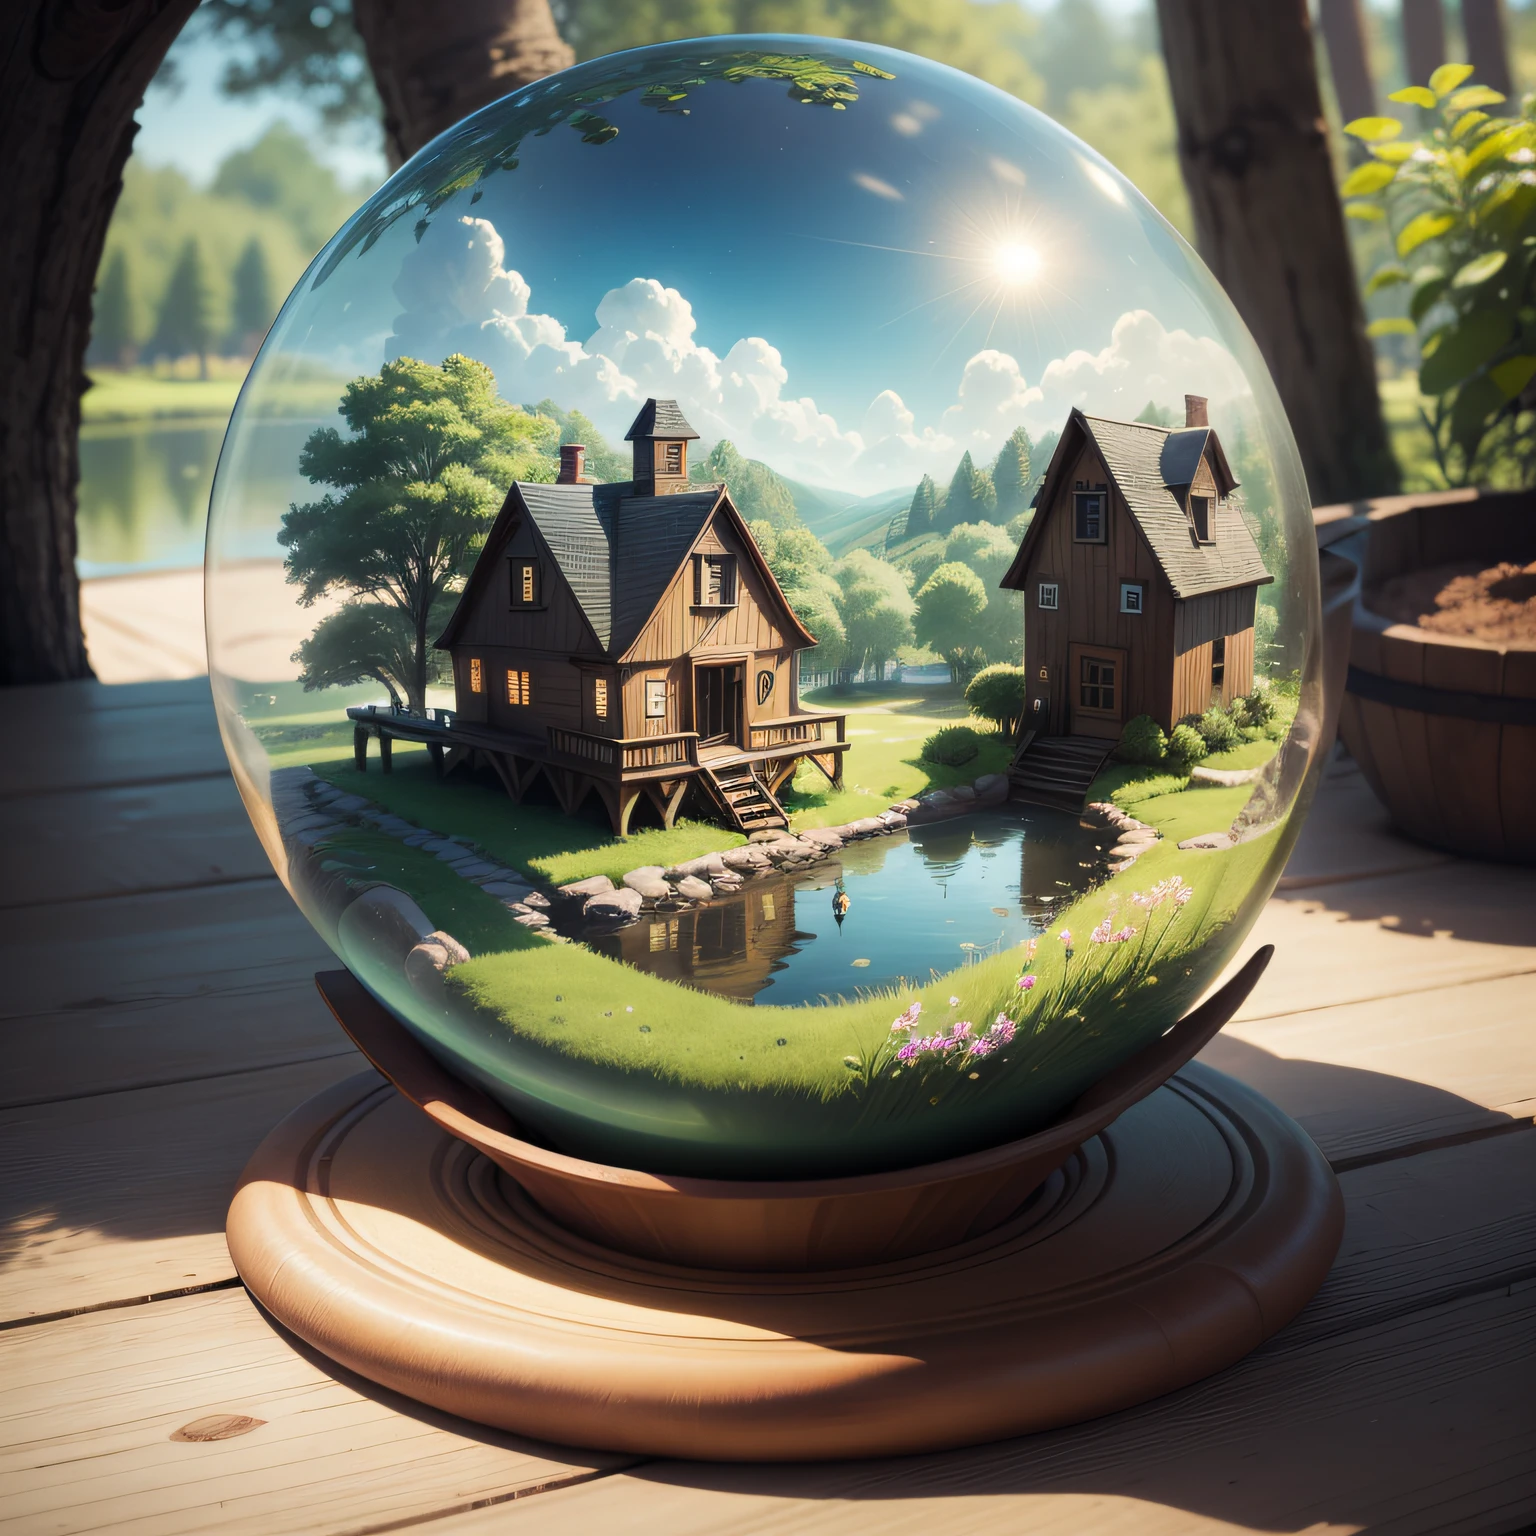 um pequeno, verão globe with a house inside, verão, árvores, e uma lagoa